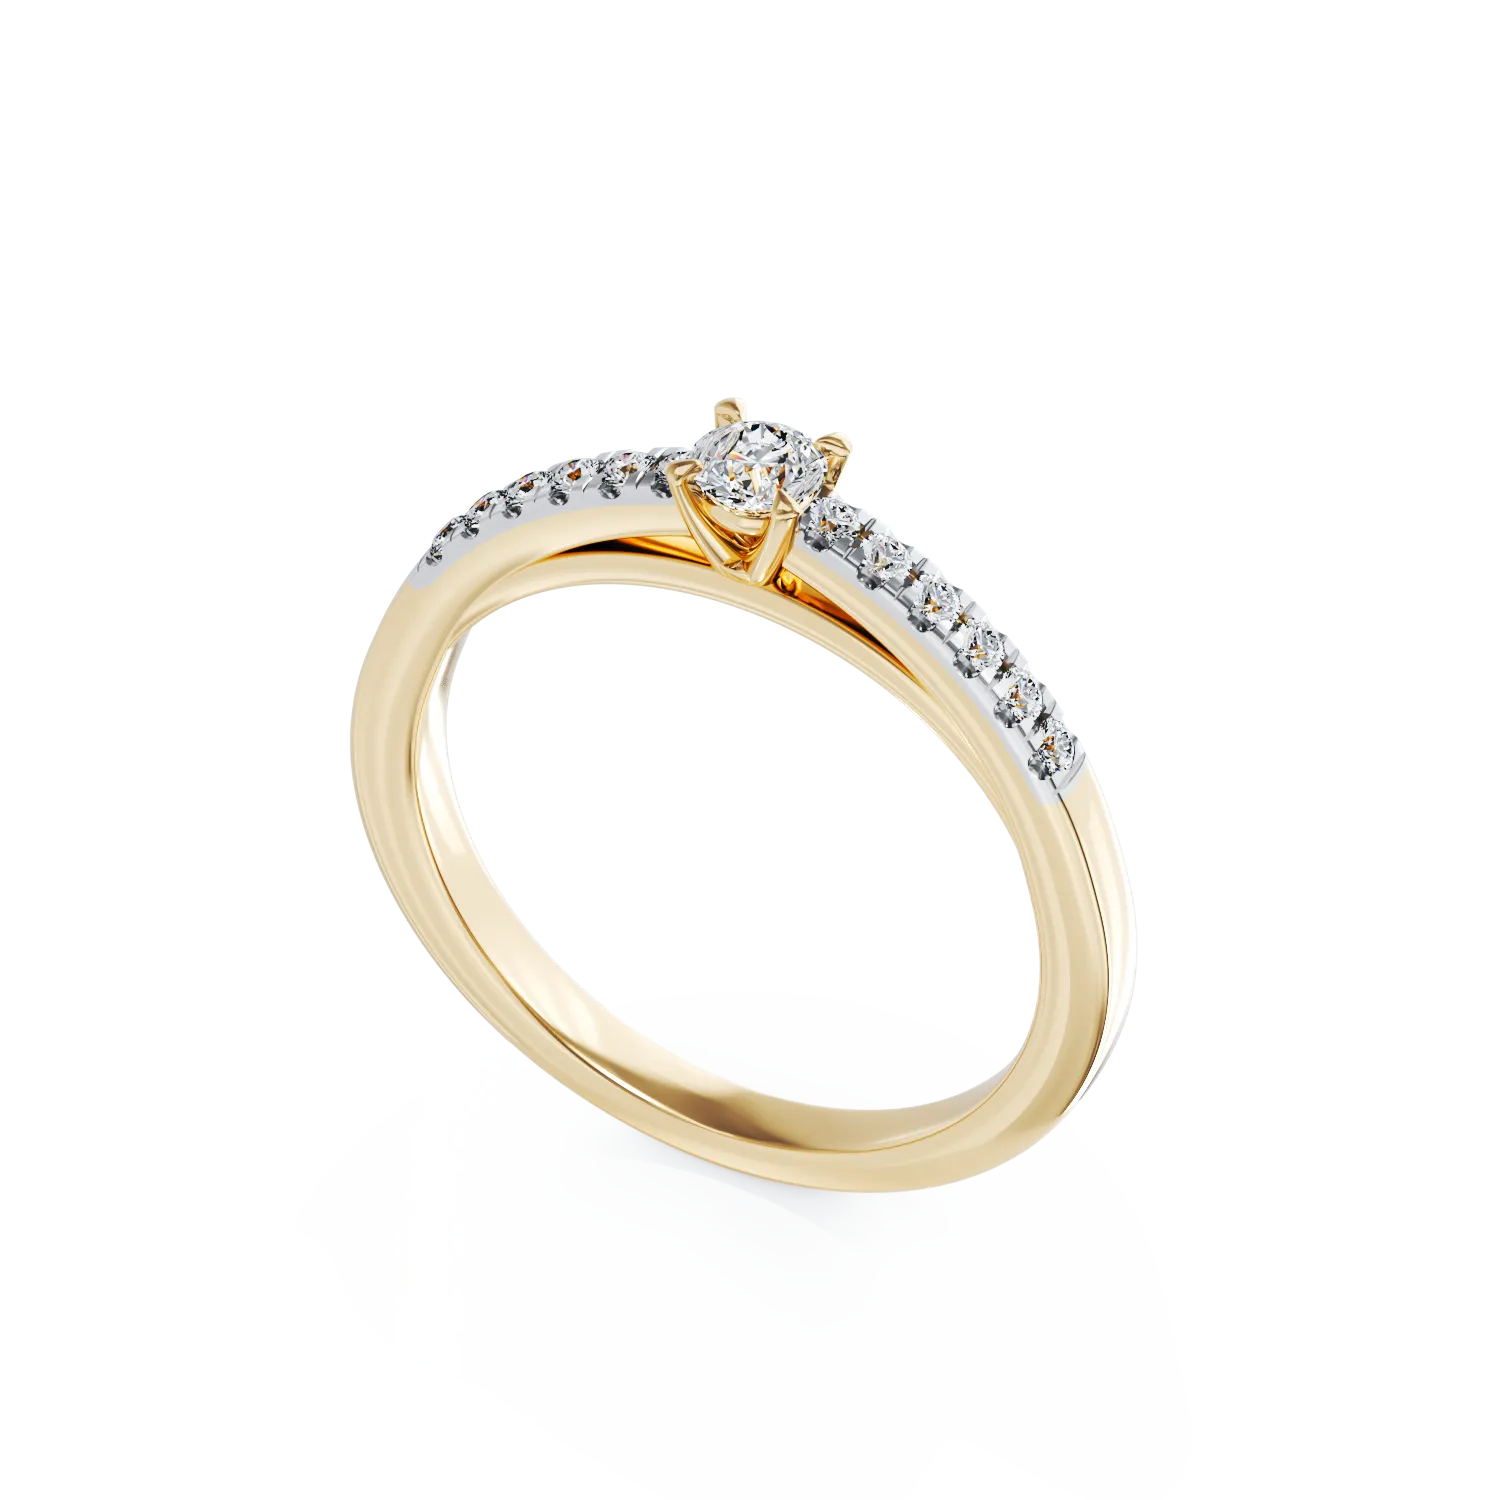 Eljegyzési gyűrű 18K-os sárga aranyból 0,24ct gyémánttal és 0,13ct gyémánttal. Gramm: 2,9